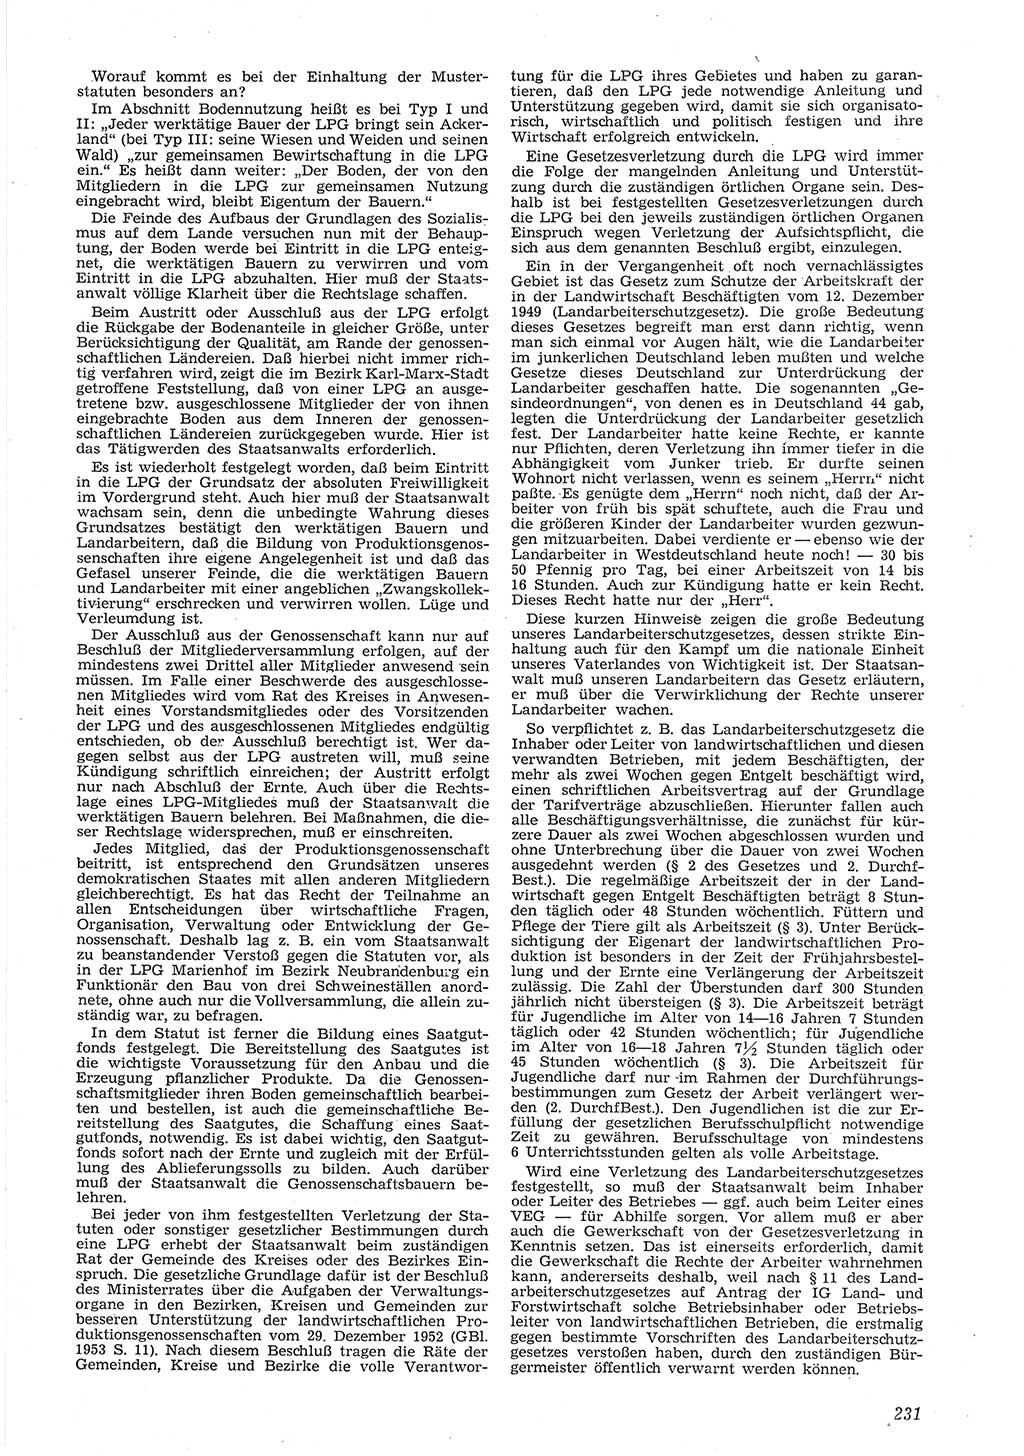 Neue Justiz (NJ), Zeitschrift für Recht und Rechtswissenschaft [Deutsche Demokratische Republik (DDR)], 8. Jahrgang 1954, Seite 231 (NJ DDR 1954, S. 231)